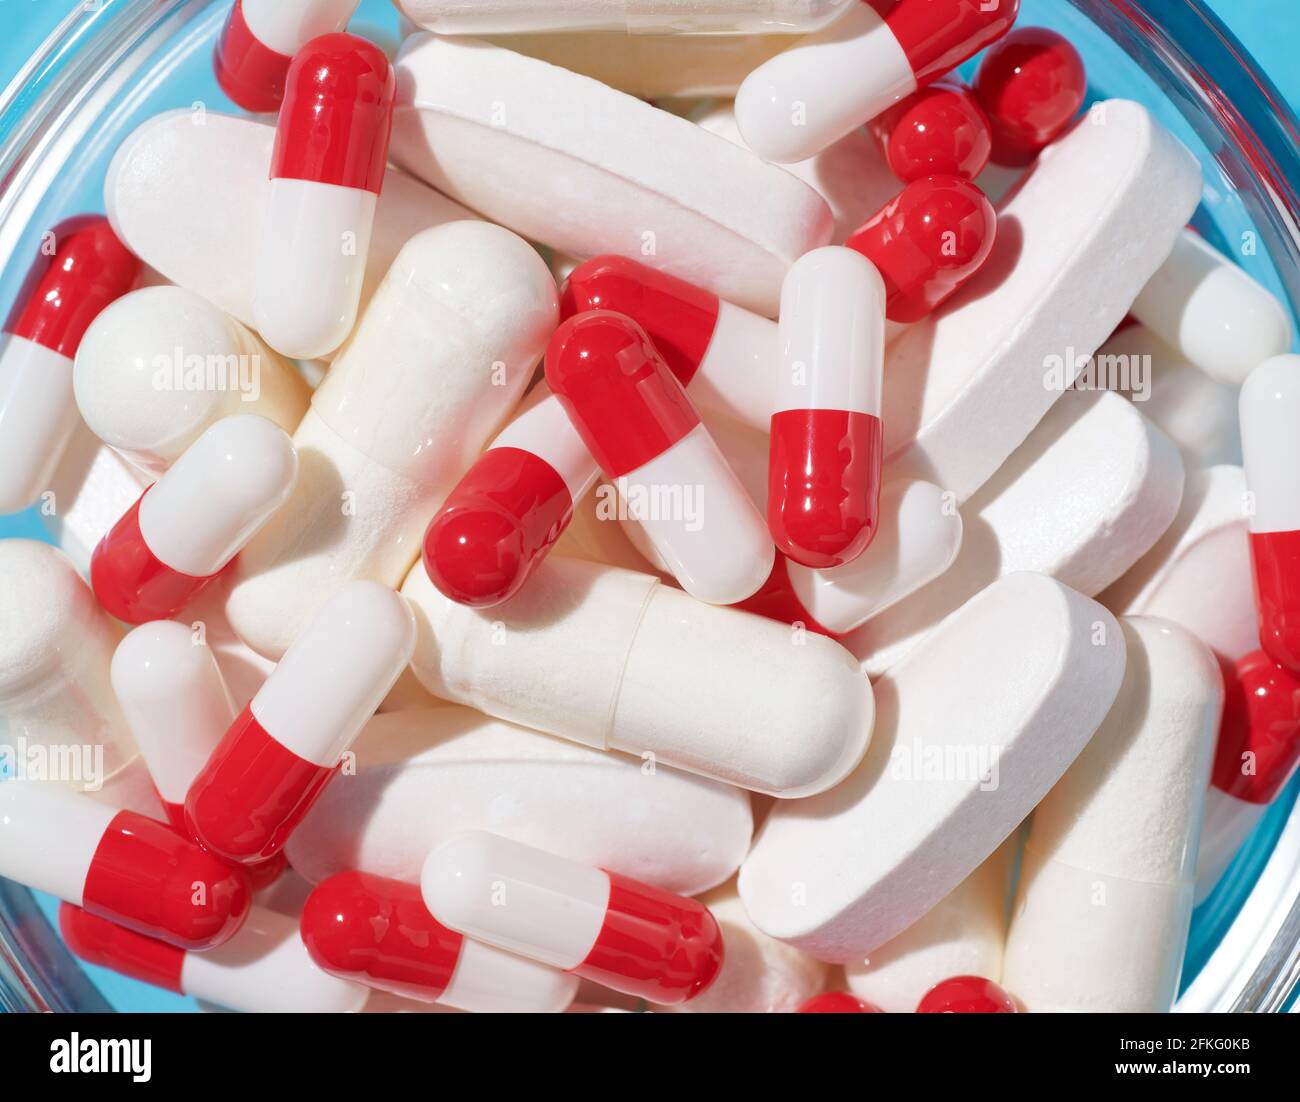 Capsules rouges et blanches et pilules blanches dans un bol Banque D'Images